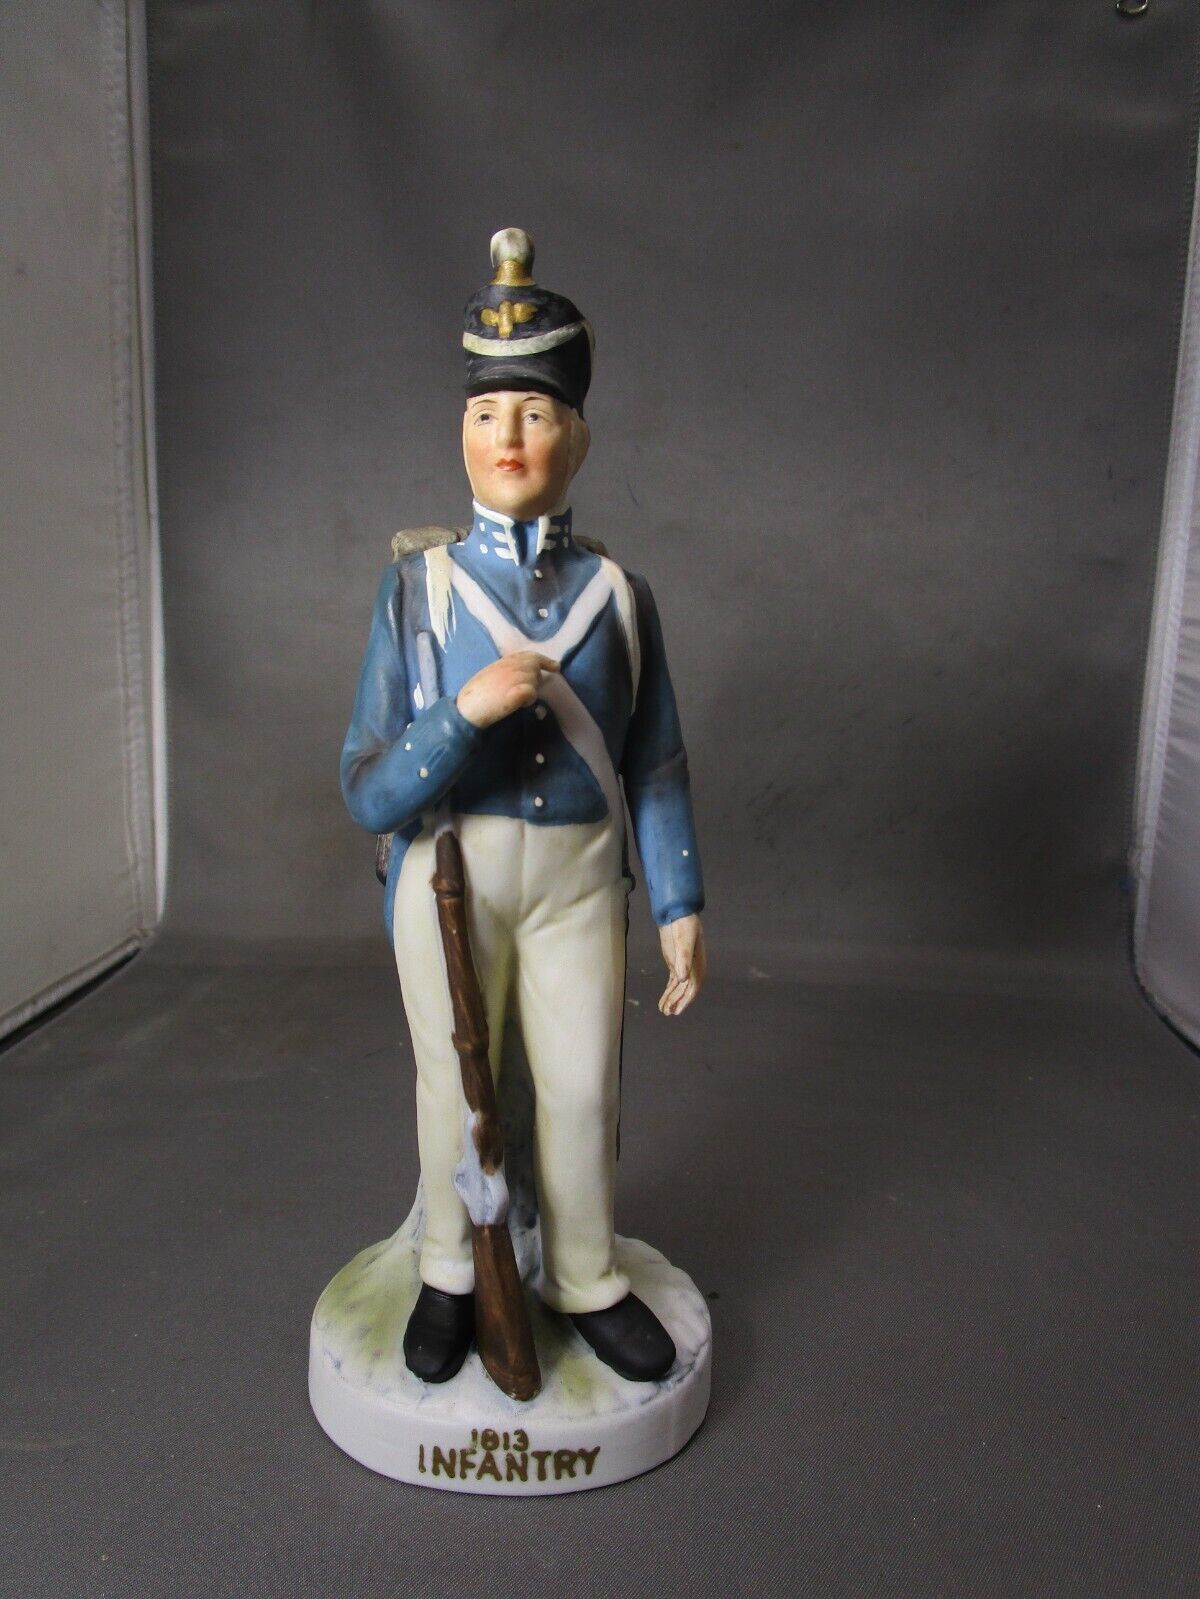 Lefton KW3678 1813 Infantry Figurine       (201)